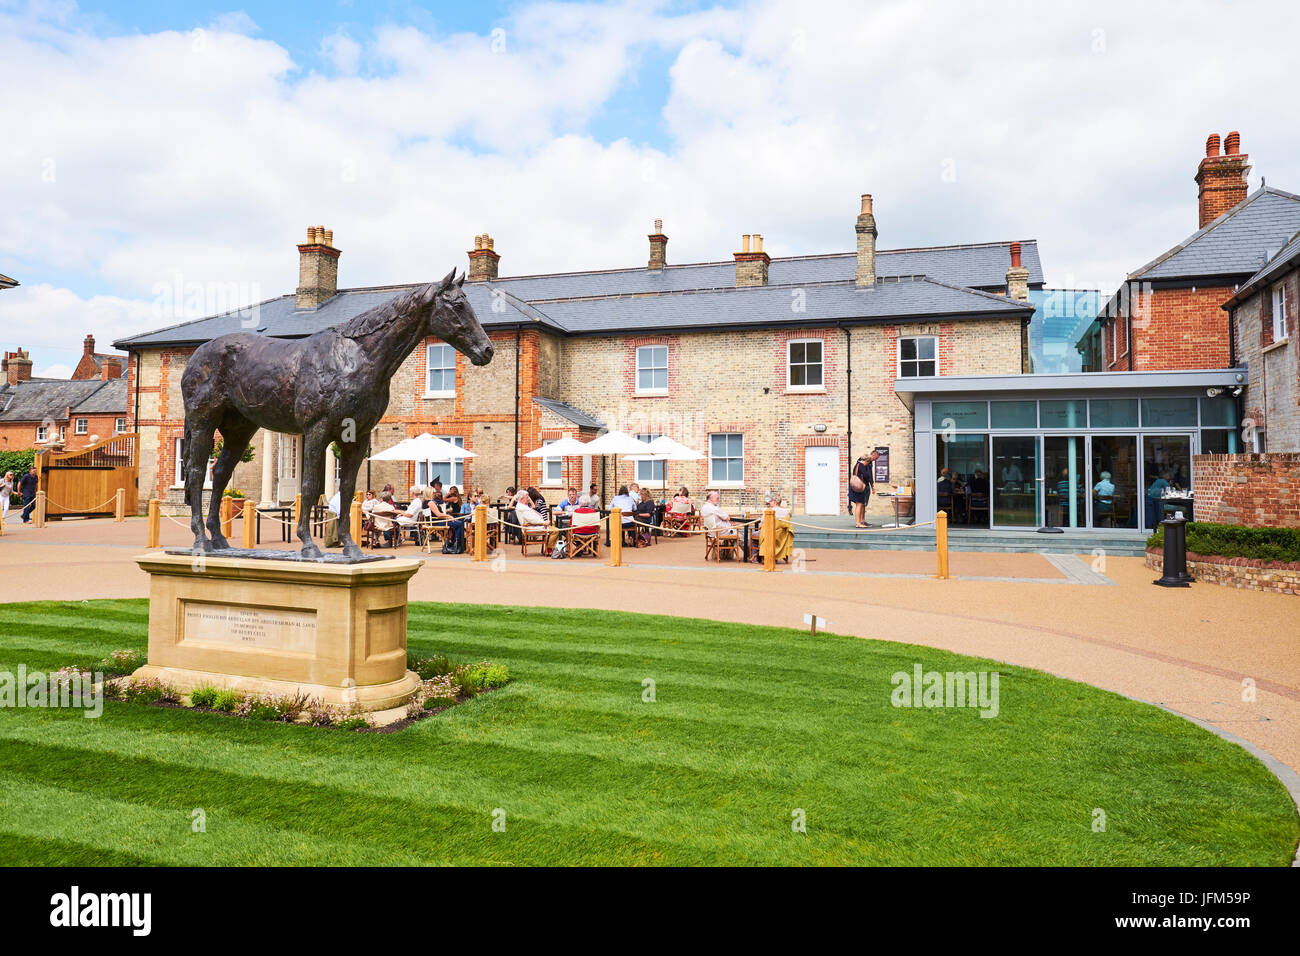 Palace House, National Heritage Centre für Pferderennen und sportliche Art, Palace Street, Newmarket, Suffolk, UK Stockfoto